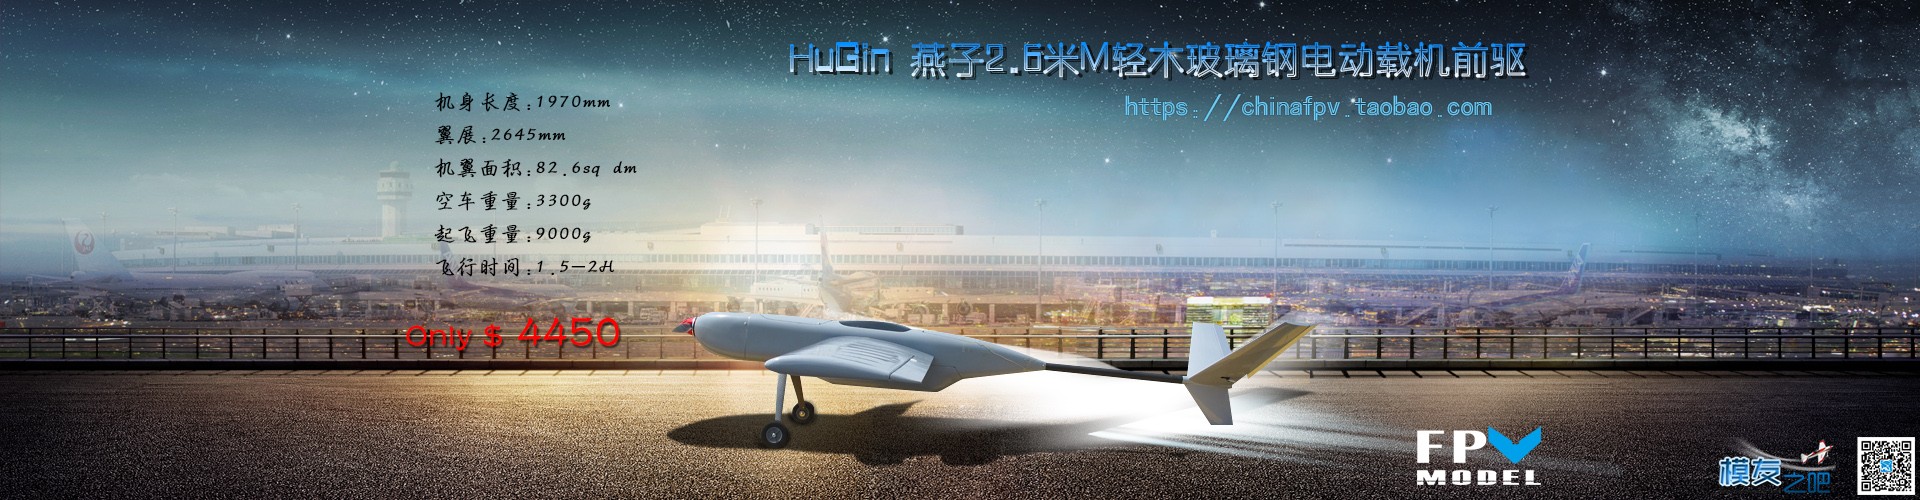 HuGin新品Swallow燕子2.6米M 前驱航拍FPV载机轻木大型无人机碳管 无人机,新品 作者:Davidleyli 4617 